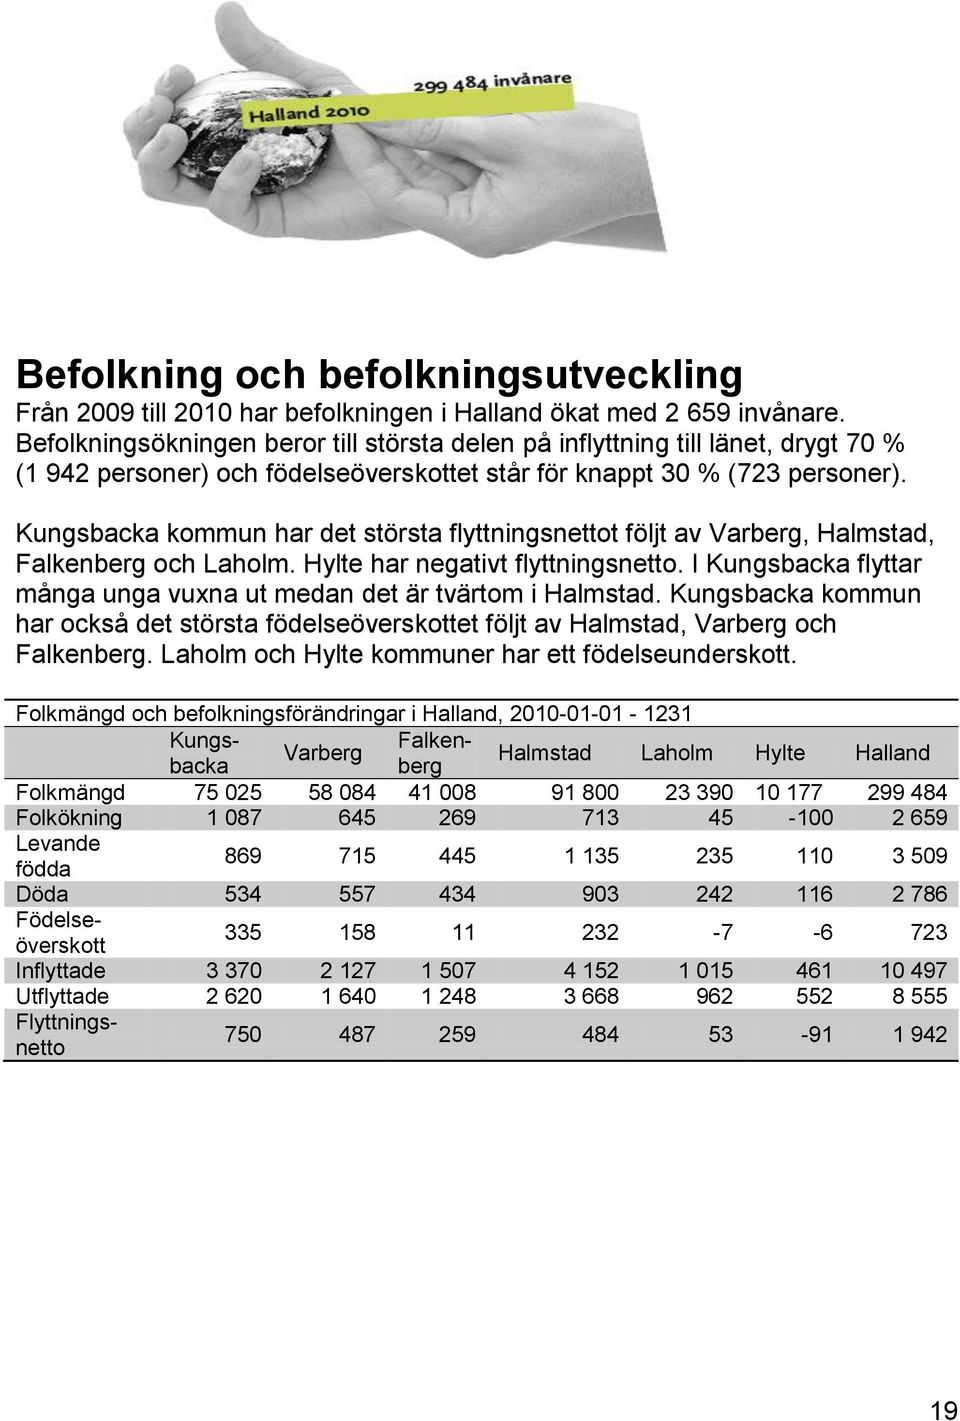 Kungsbacka kommun har det största flyttningsnettot följt av Varberg, Halmstad, Falkenberg och Laholm. Hylte har negativt flyttningsnetto.